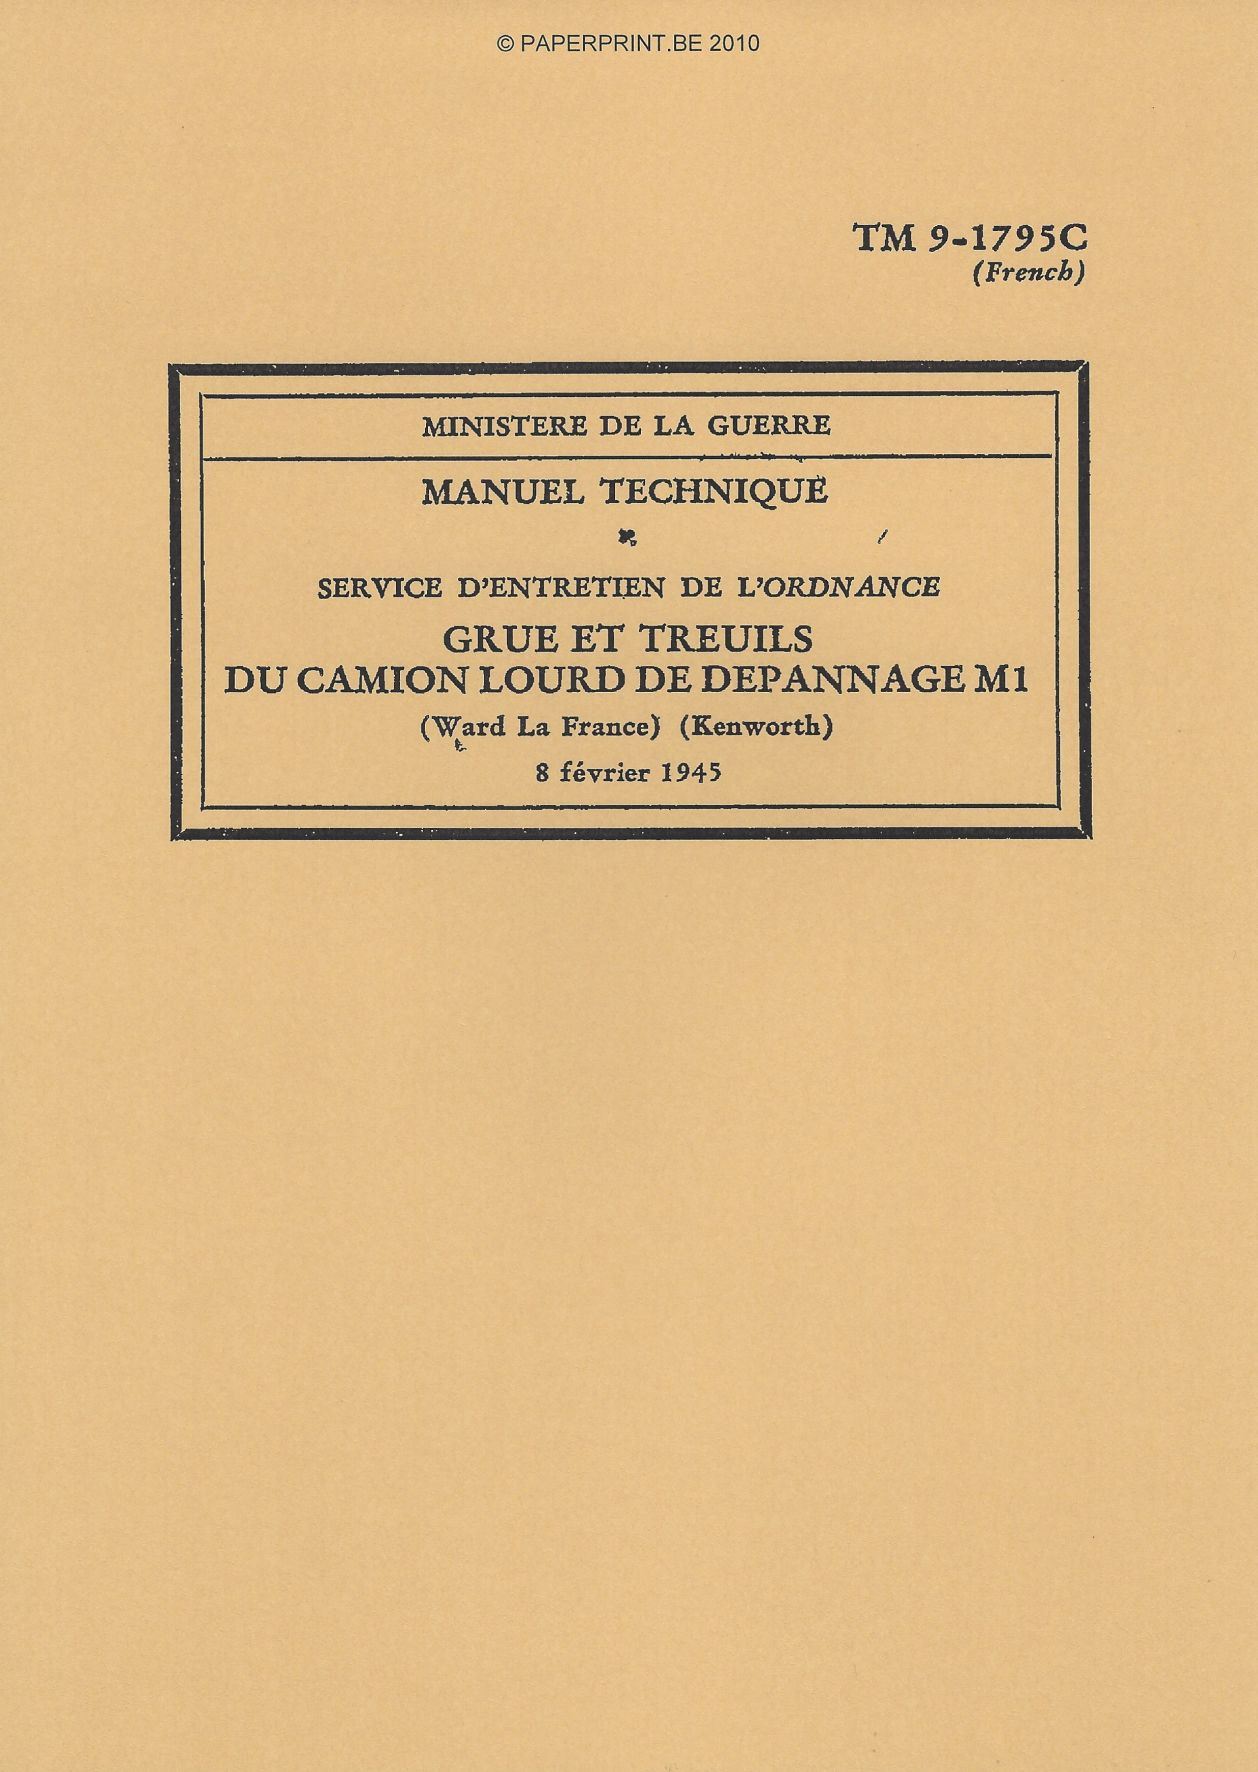 TM 9-1795C FR GRUE ET TREUILS DU CAMION LOURD DE DEPANNAGE M1 (WARD LA FRANCE) (KENWORTH)